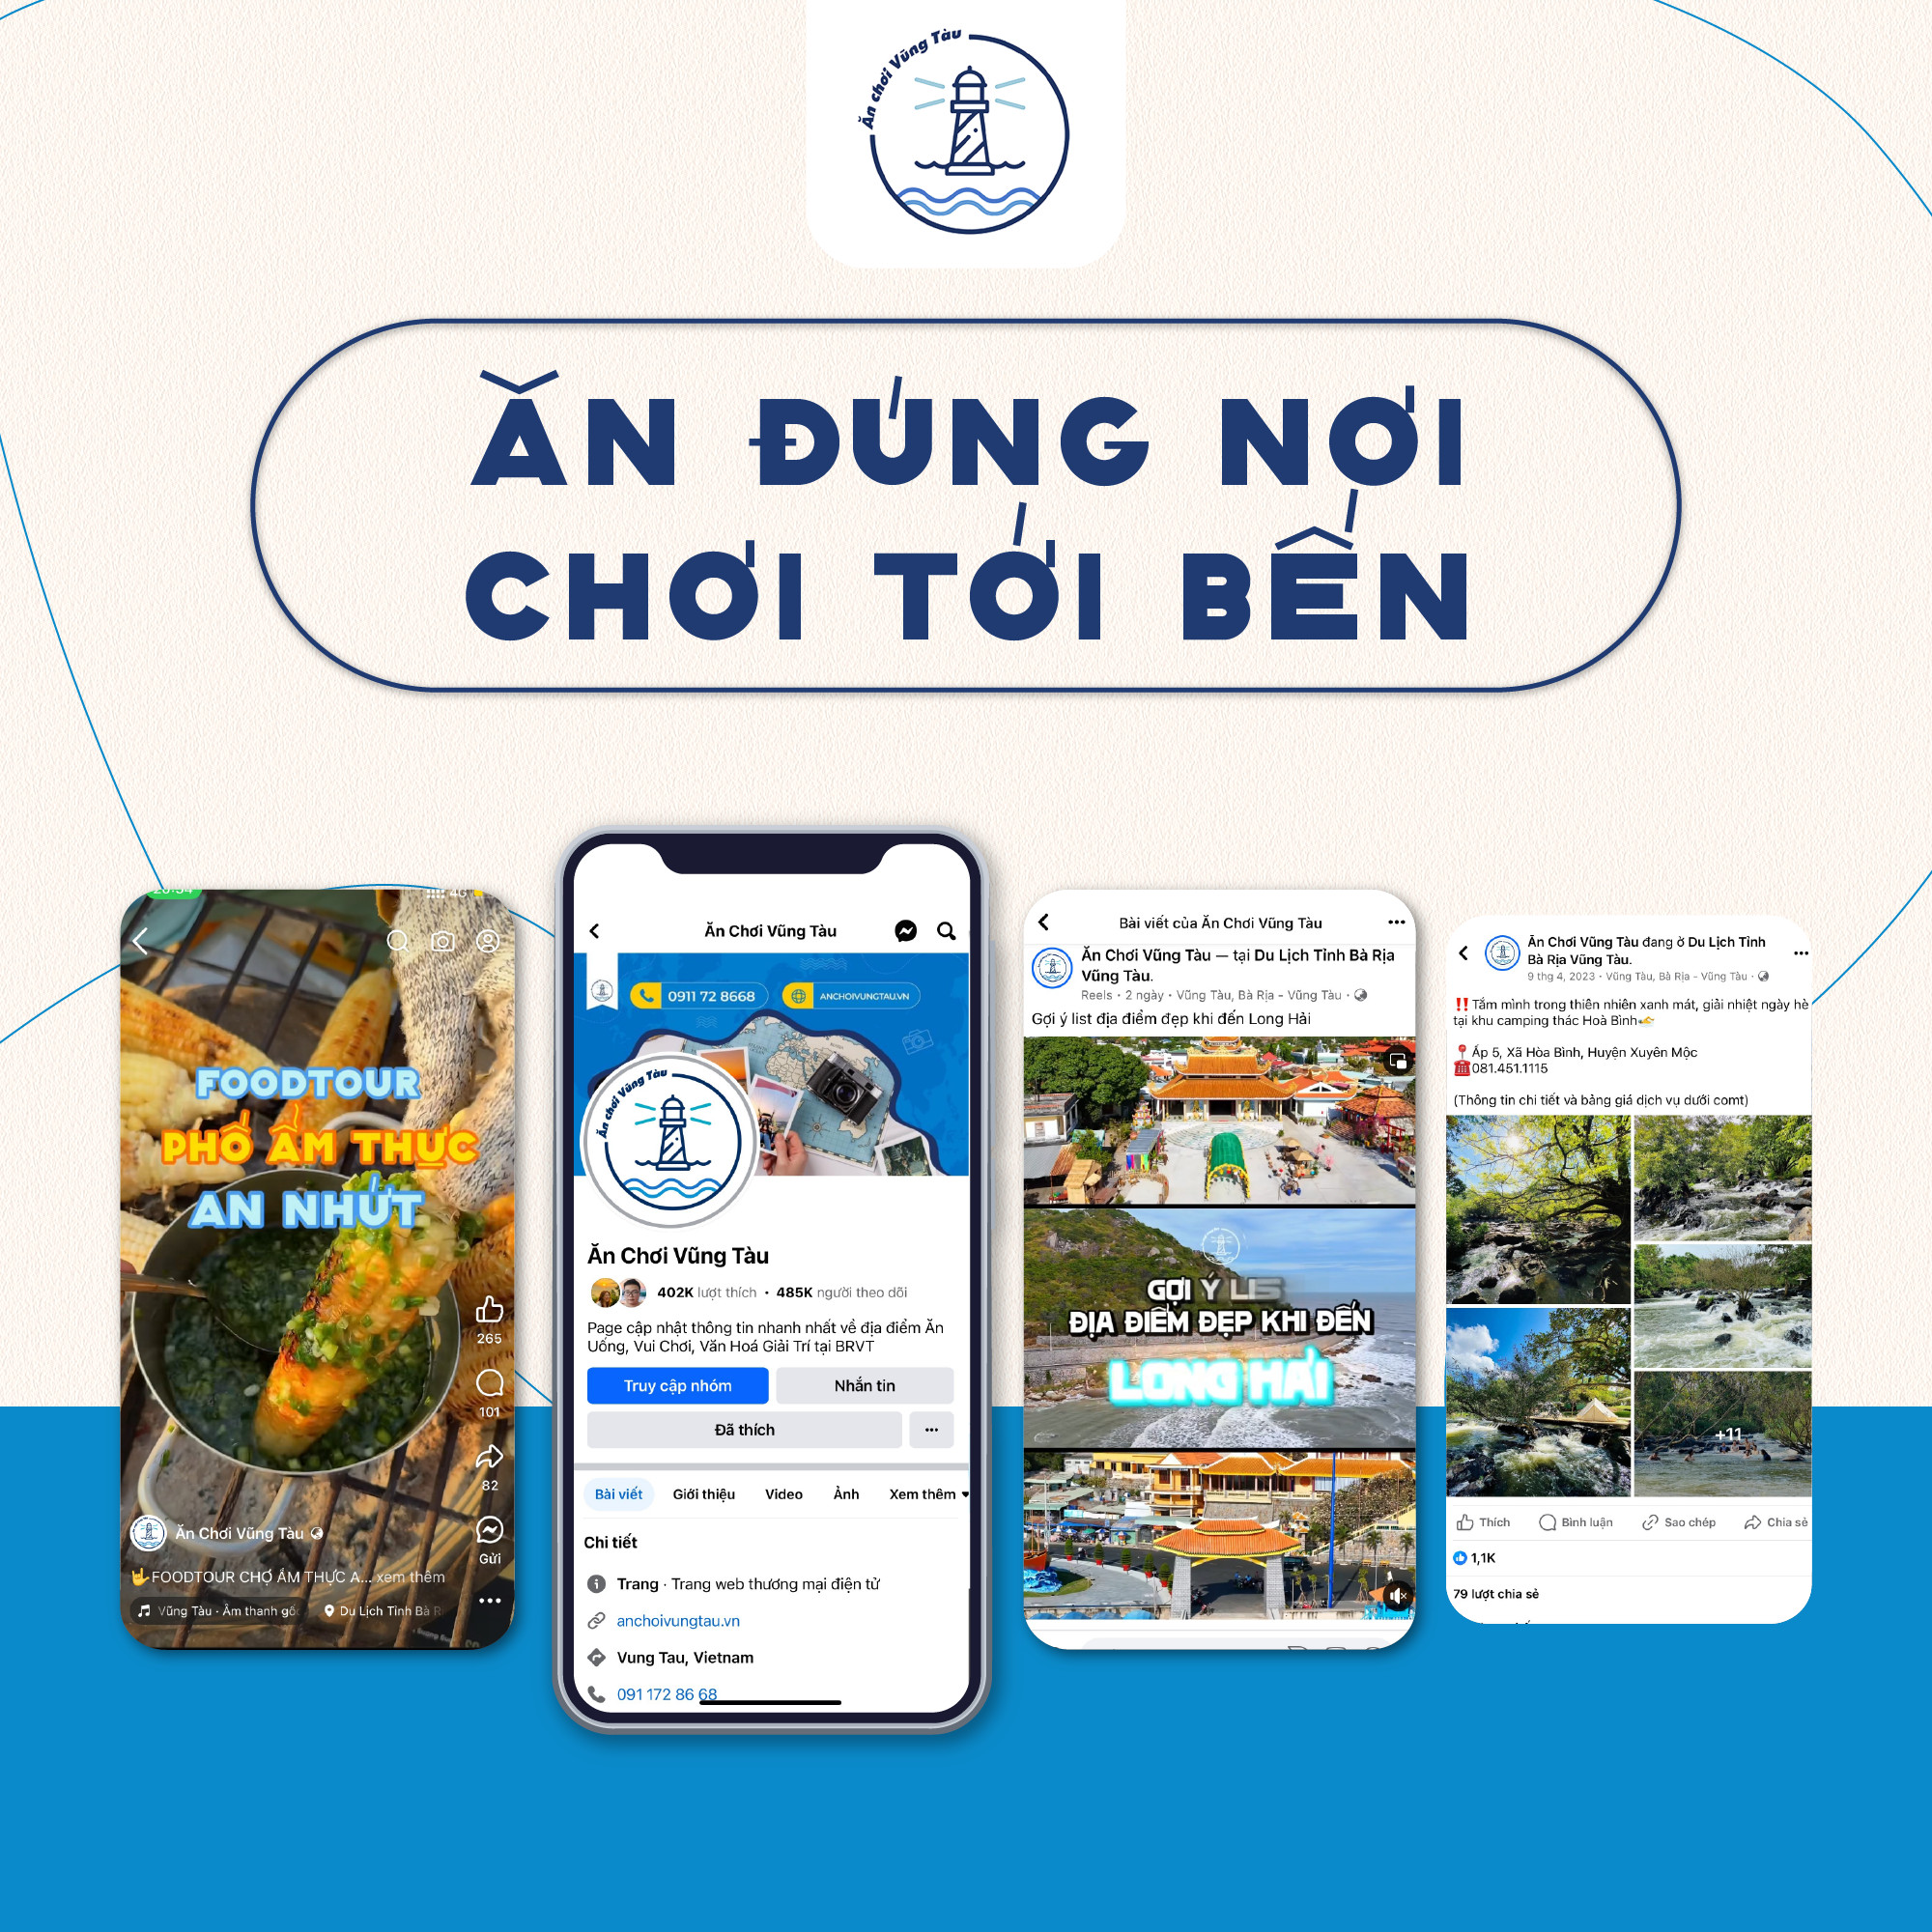 Fanpage 'Ăn chơi Vũng Tàu' - Tấm bản đồ đa dạng về văn hóa và ẩm thực Bà Rịa - Vũng Tàu